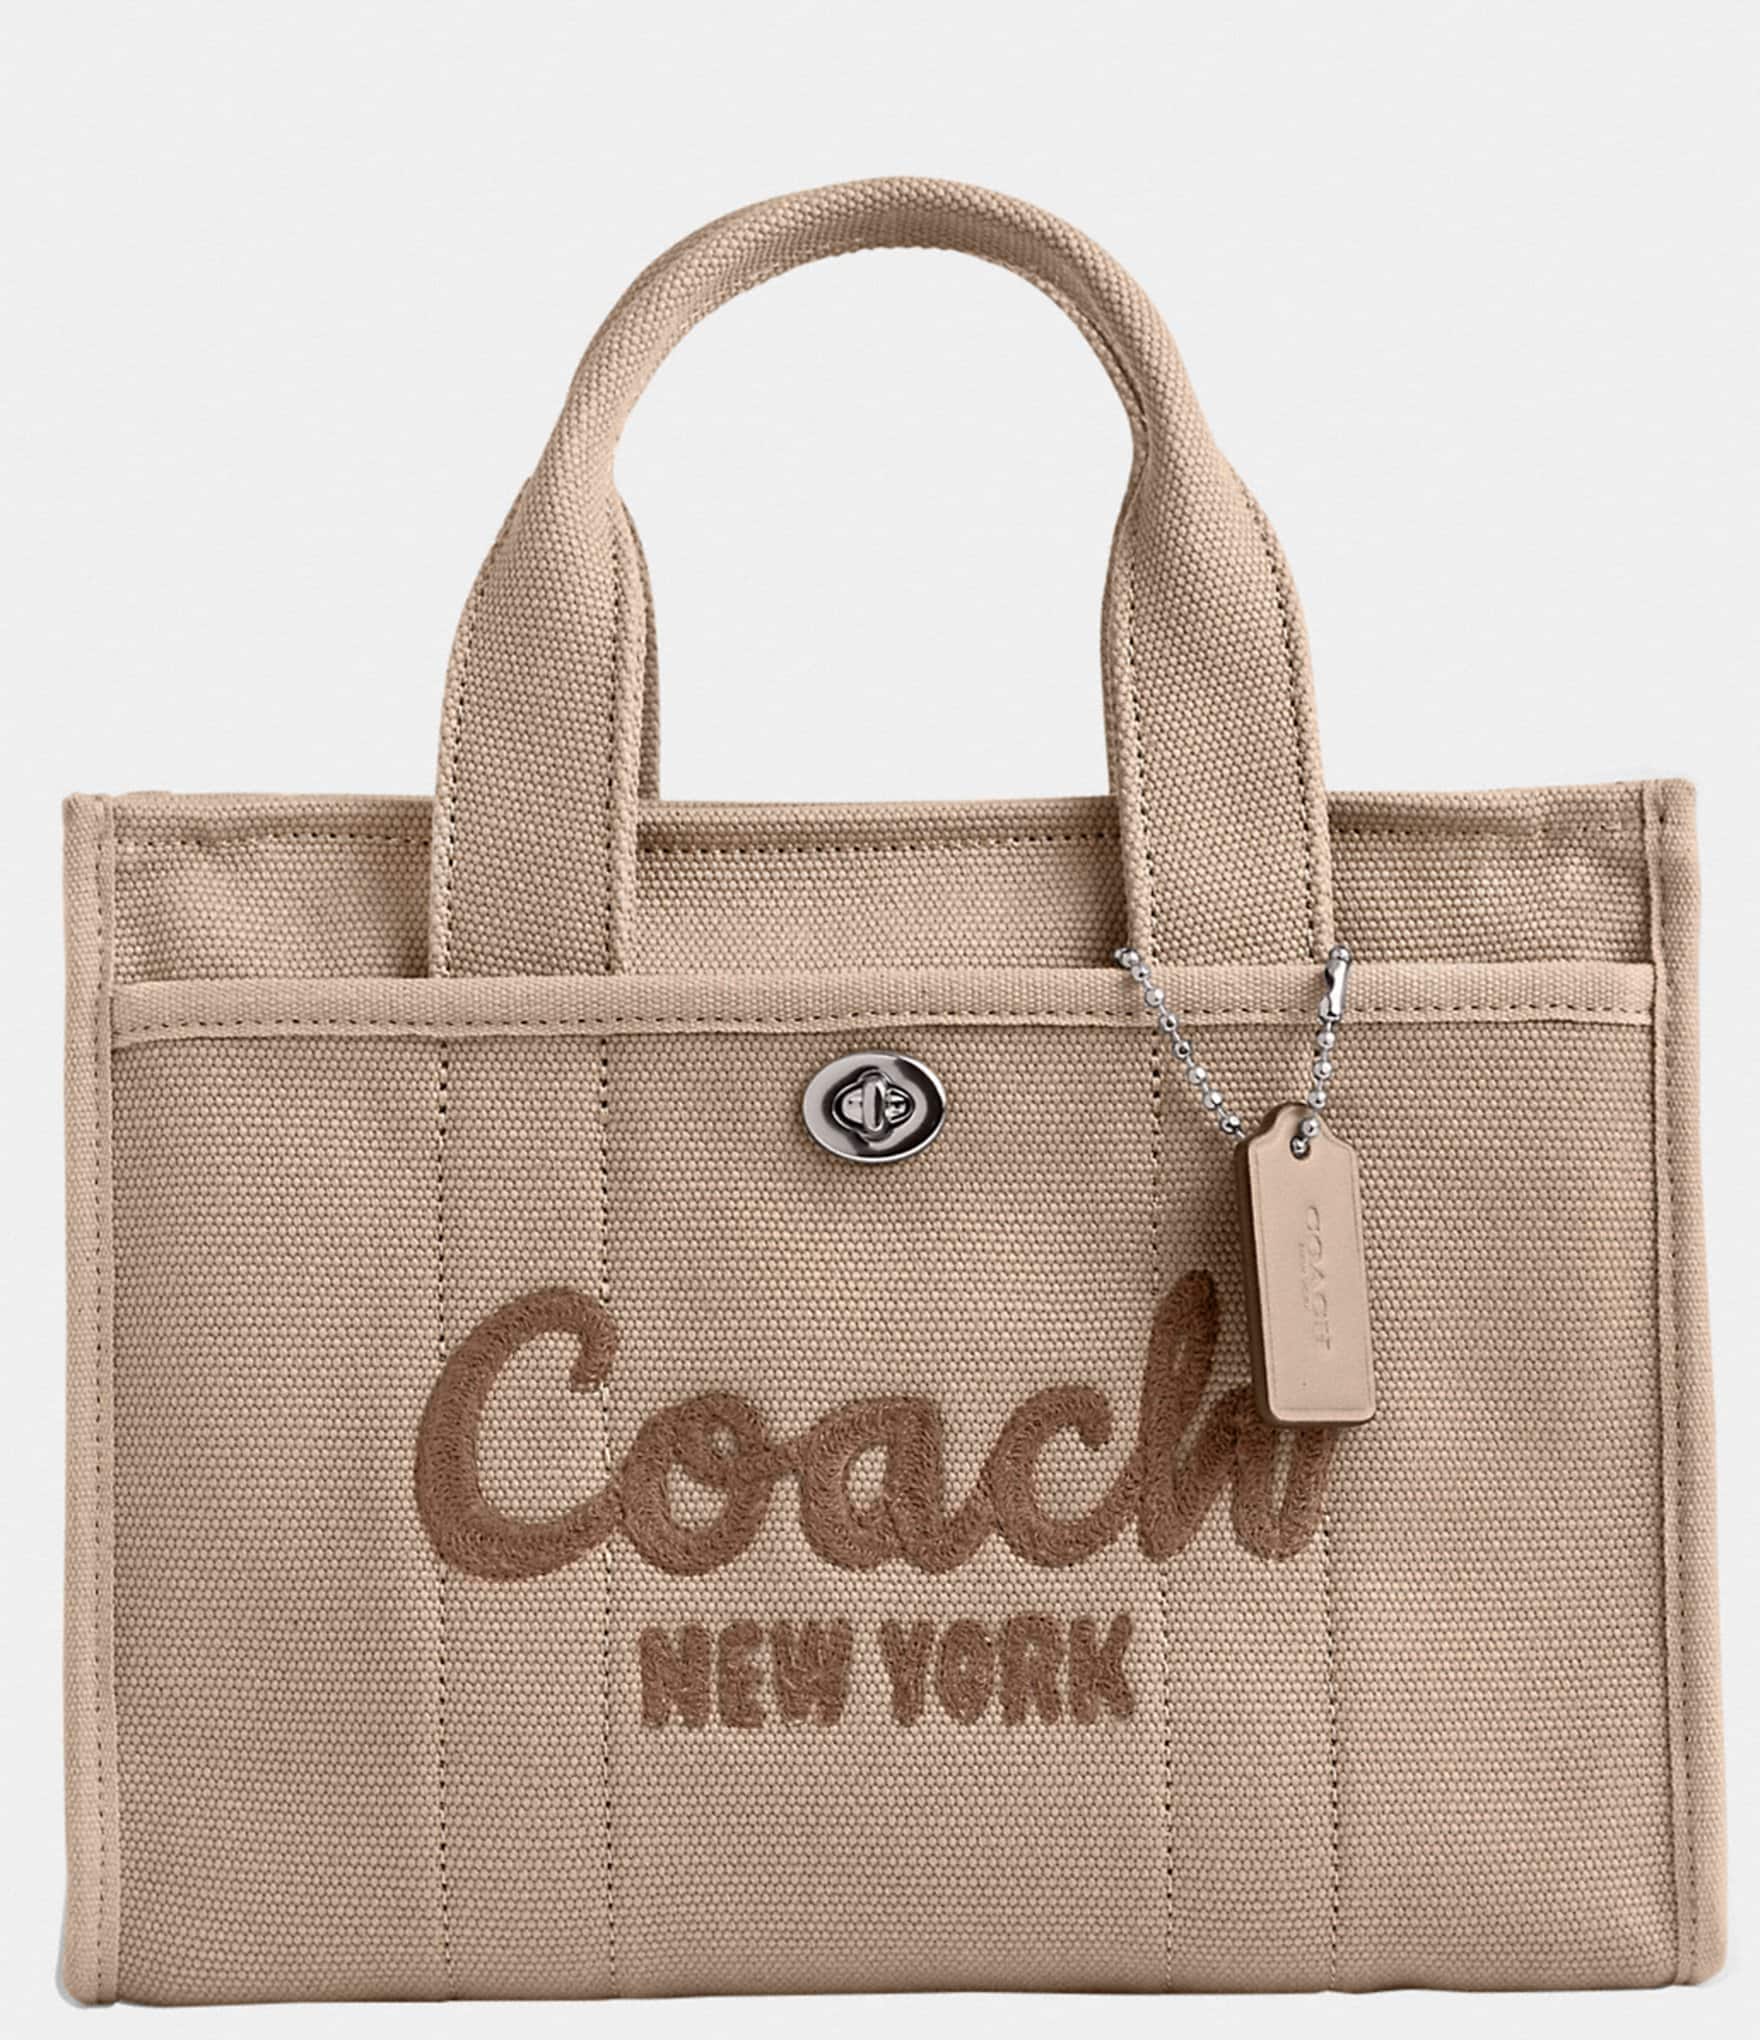 Preloved Used Coach Handbag & Shoulder Bag For Sale India